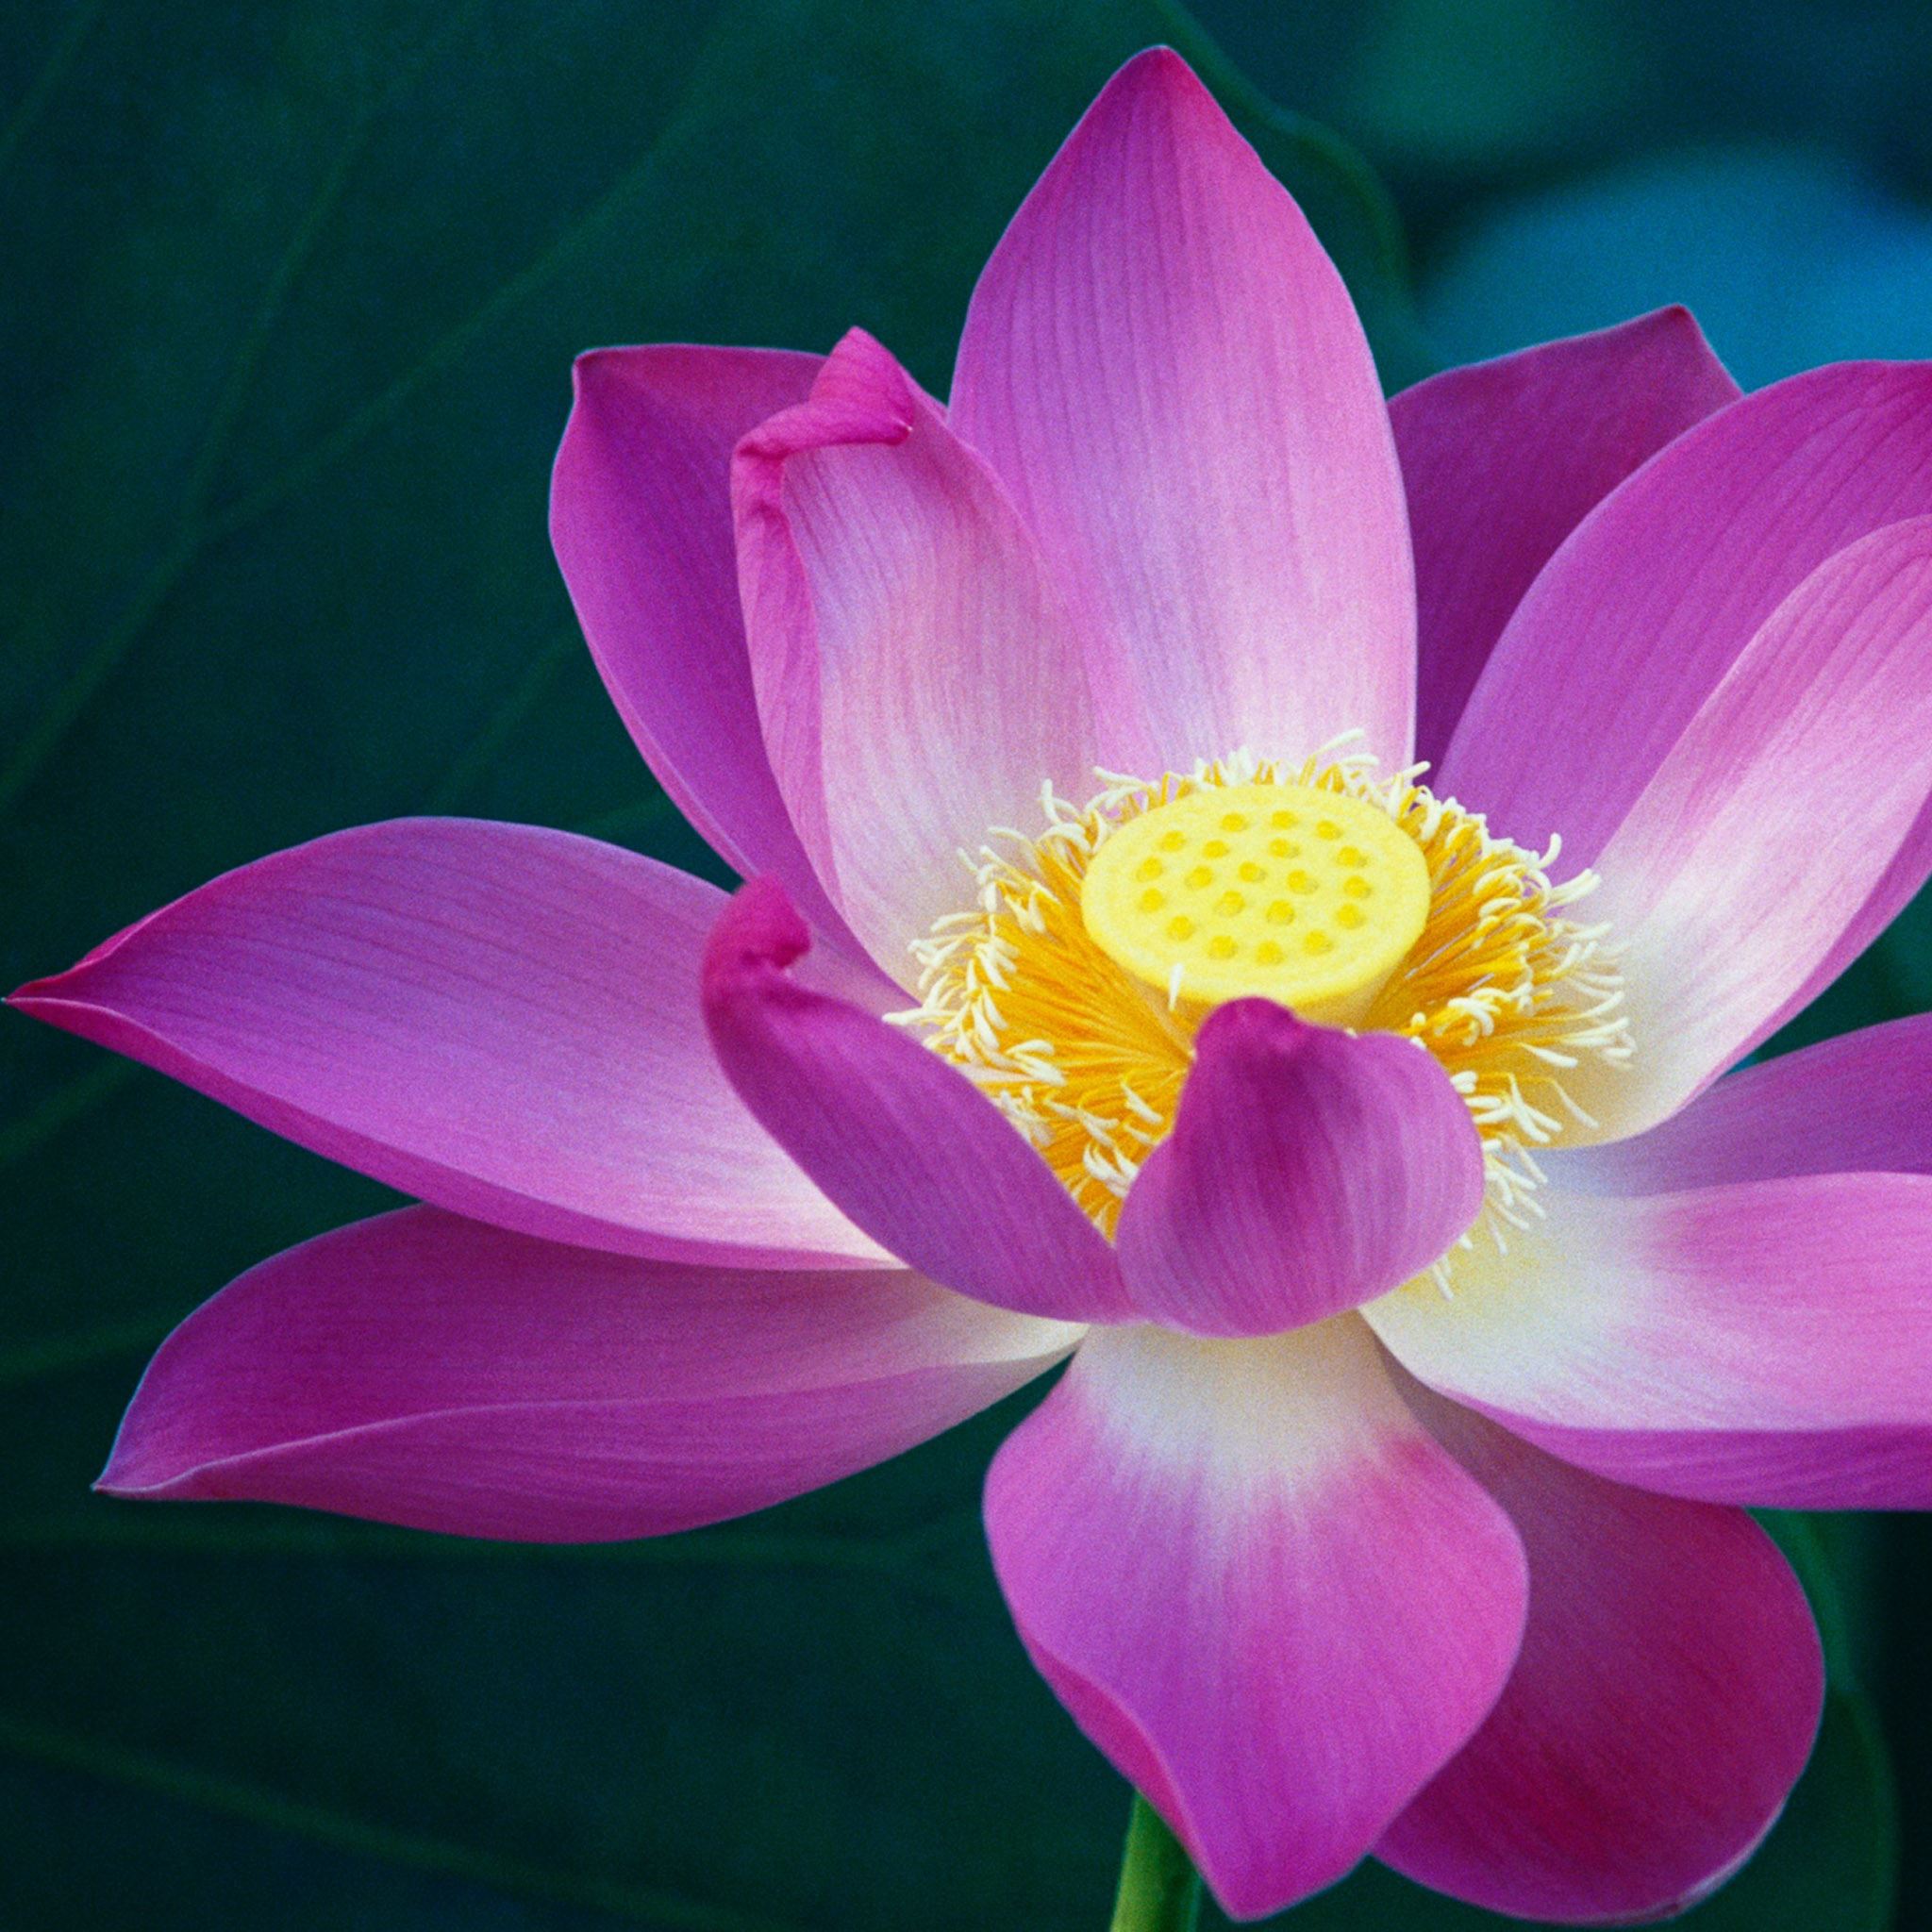 Lotus Flower iPad Air wallpaper 